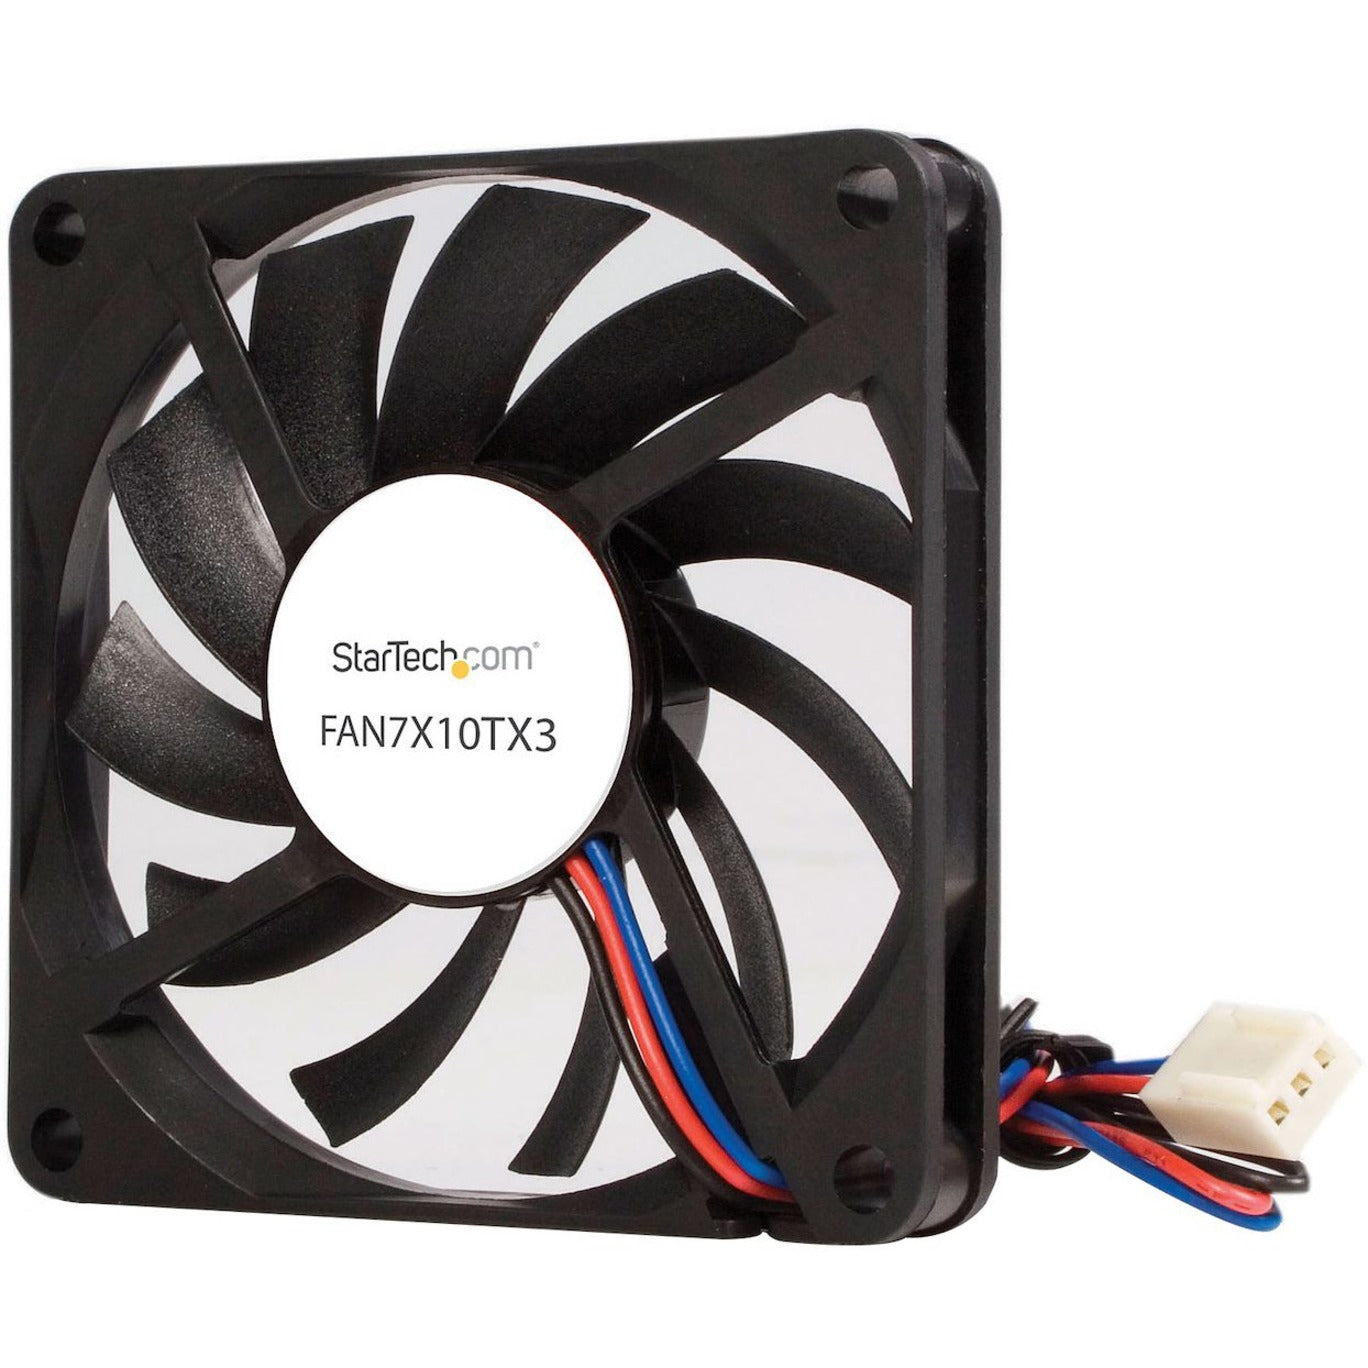 StarTech.com FAN7X10TX3 Replacement 70mm TX3 CPU Cooler Fan, Dual Ball Bearing, 2-Year Warranty